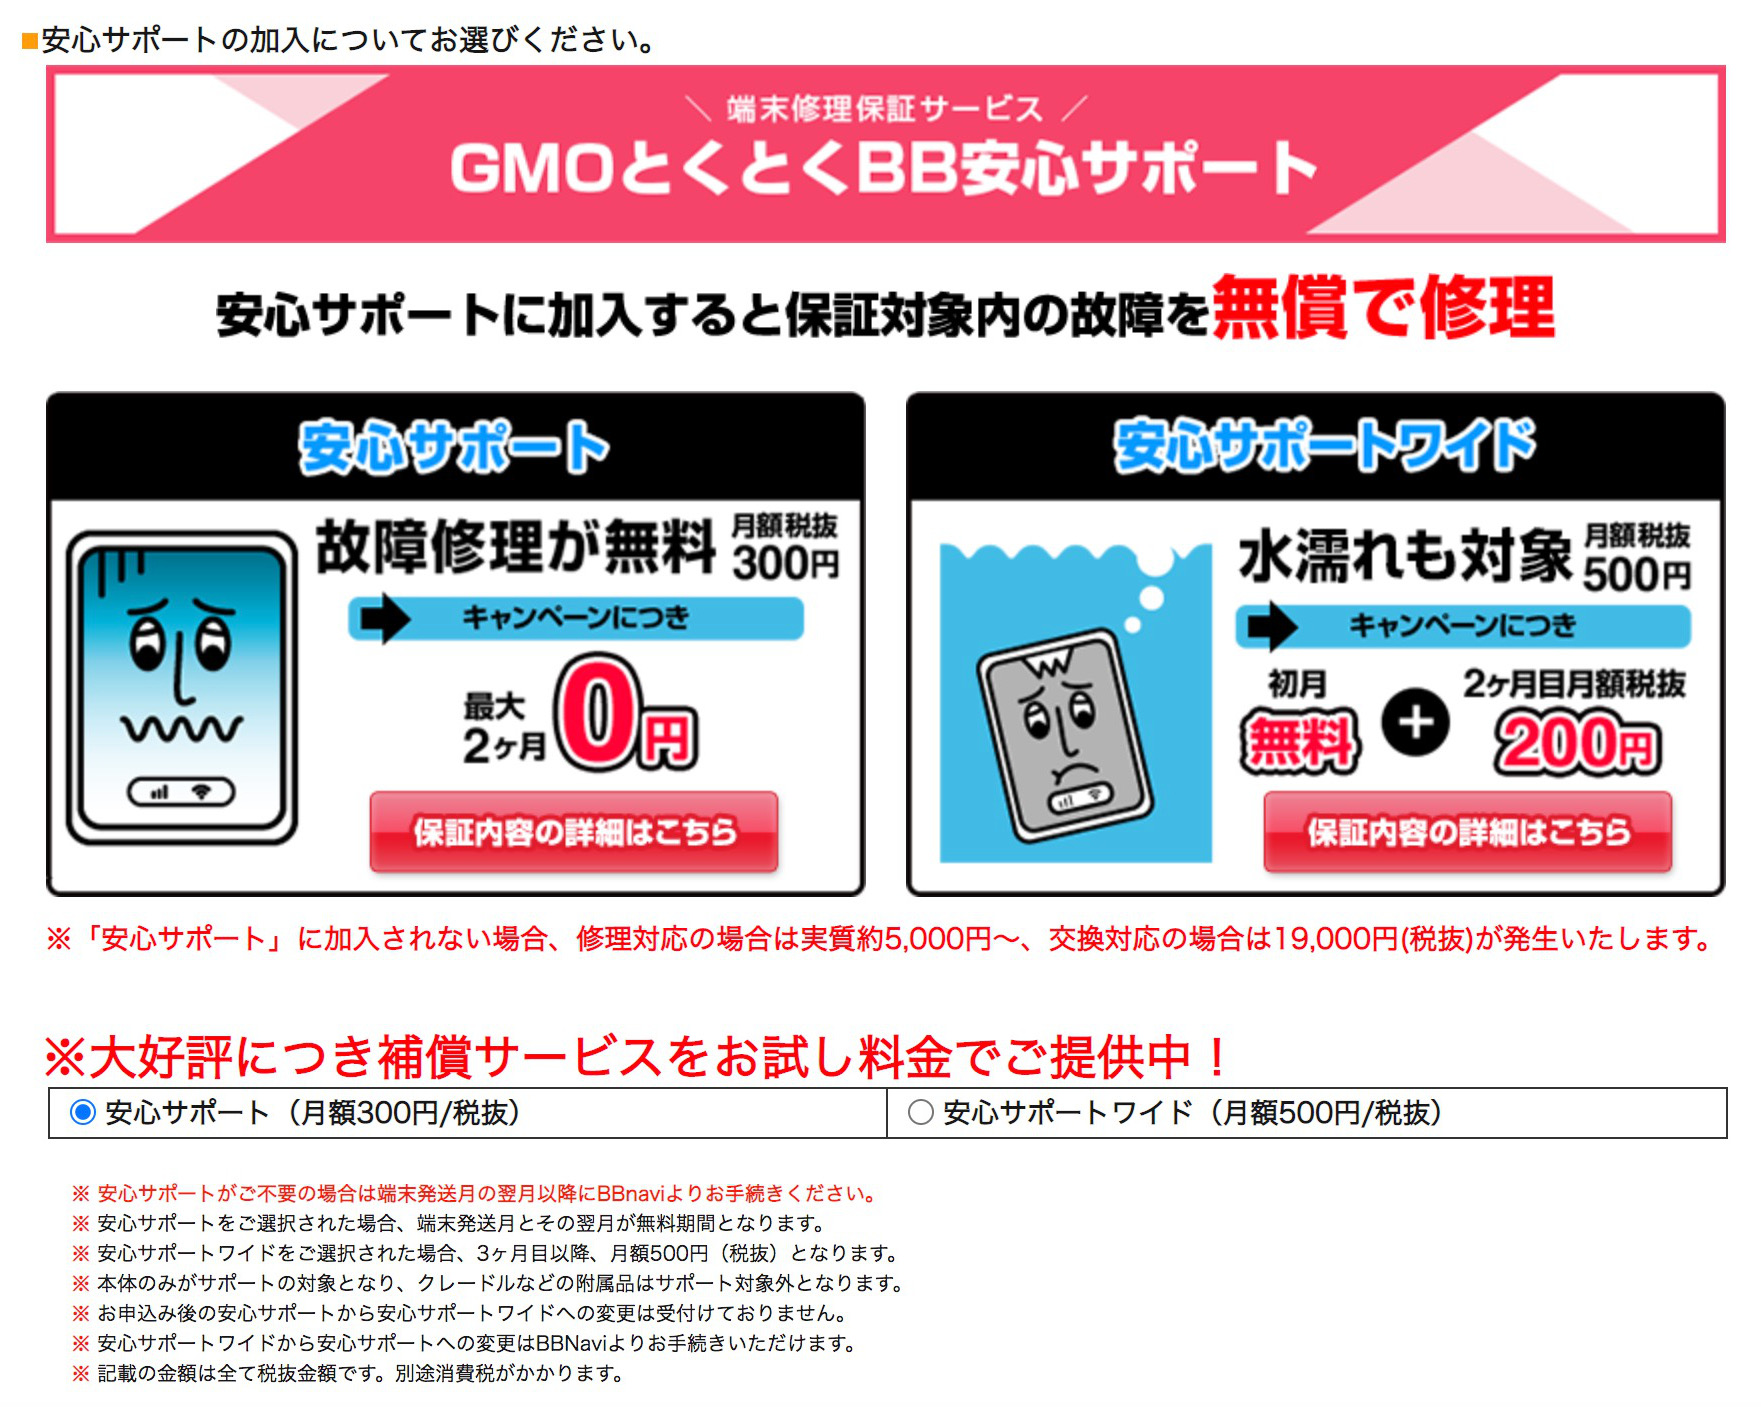 【WiMAX】GMOとくとくBBの有料オプションを解約する